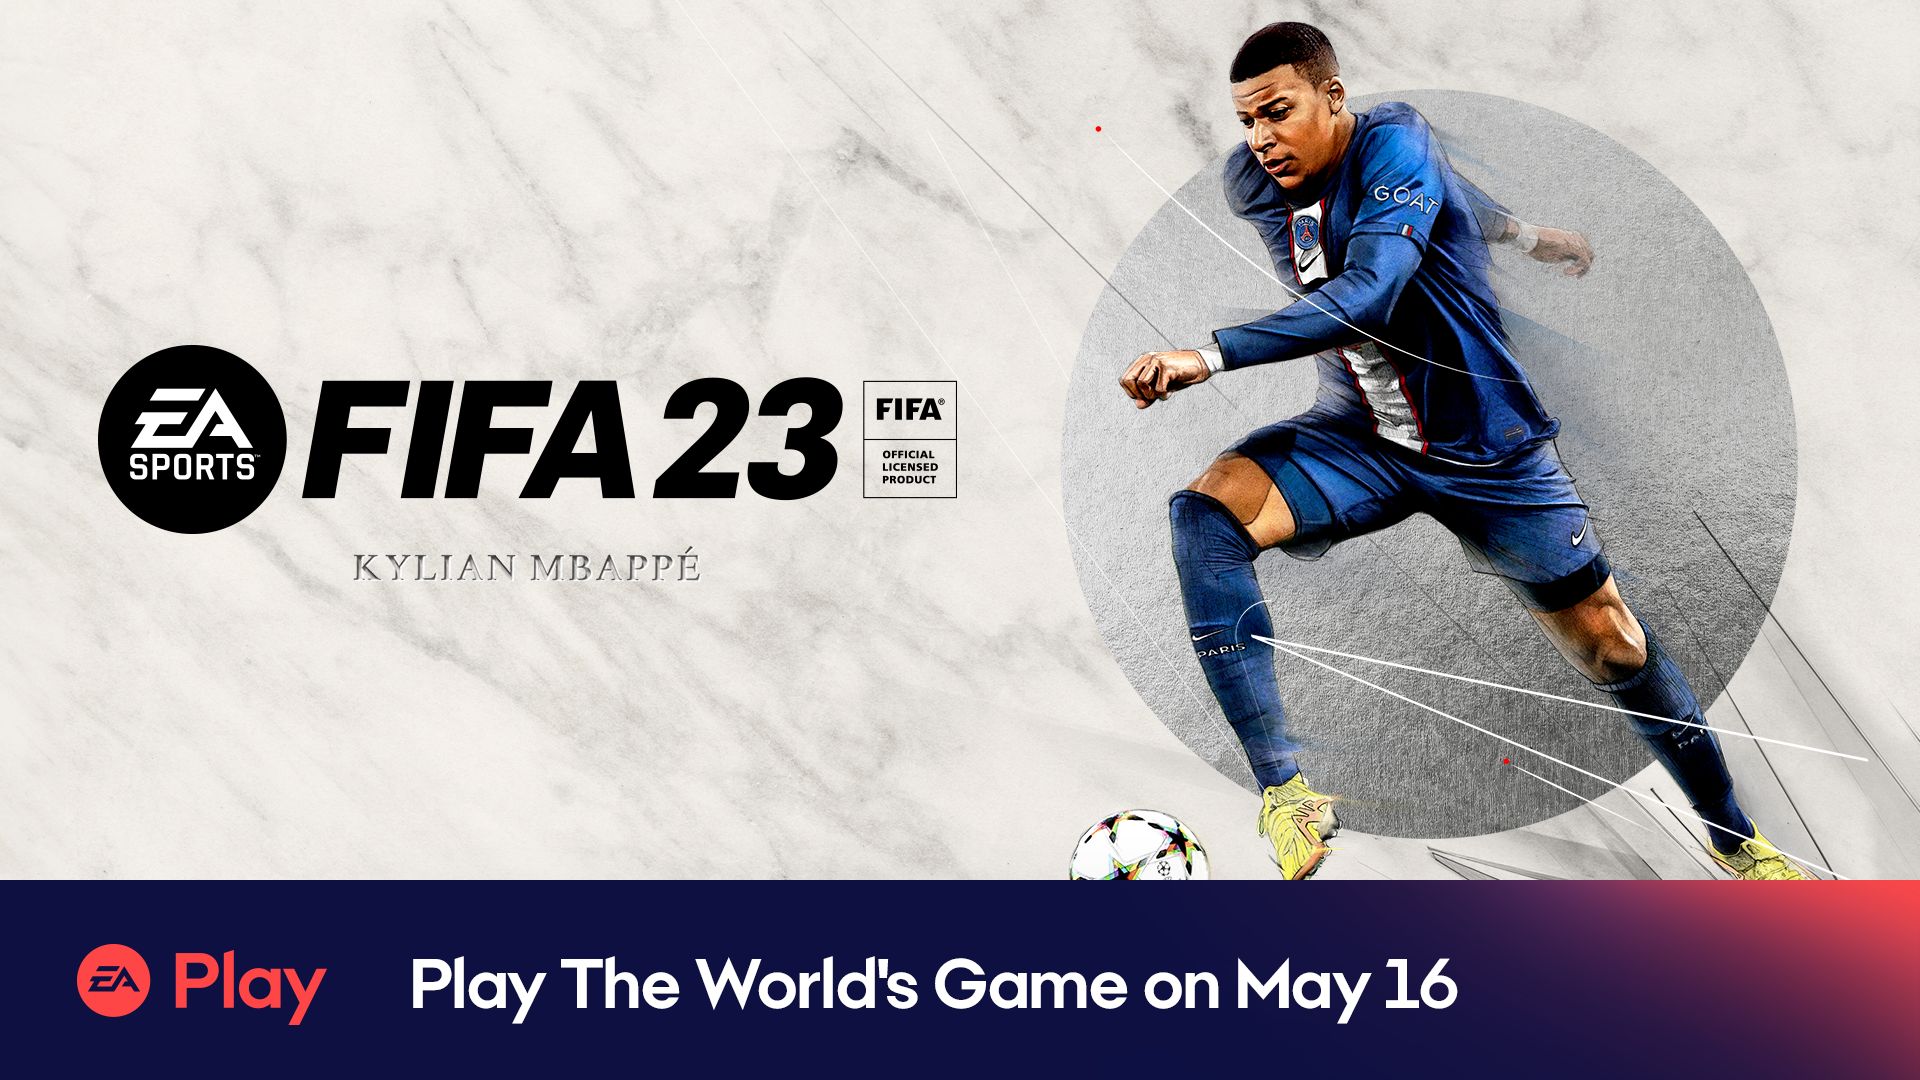 Graj w światową grę FIFA 23, która pojawi się na liście gier już jutro